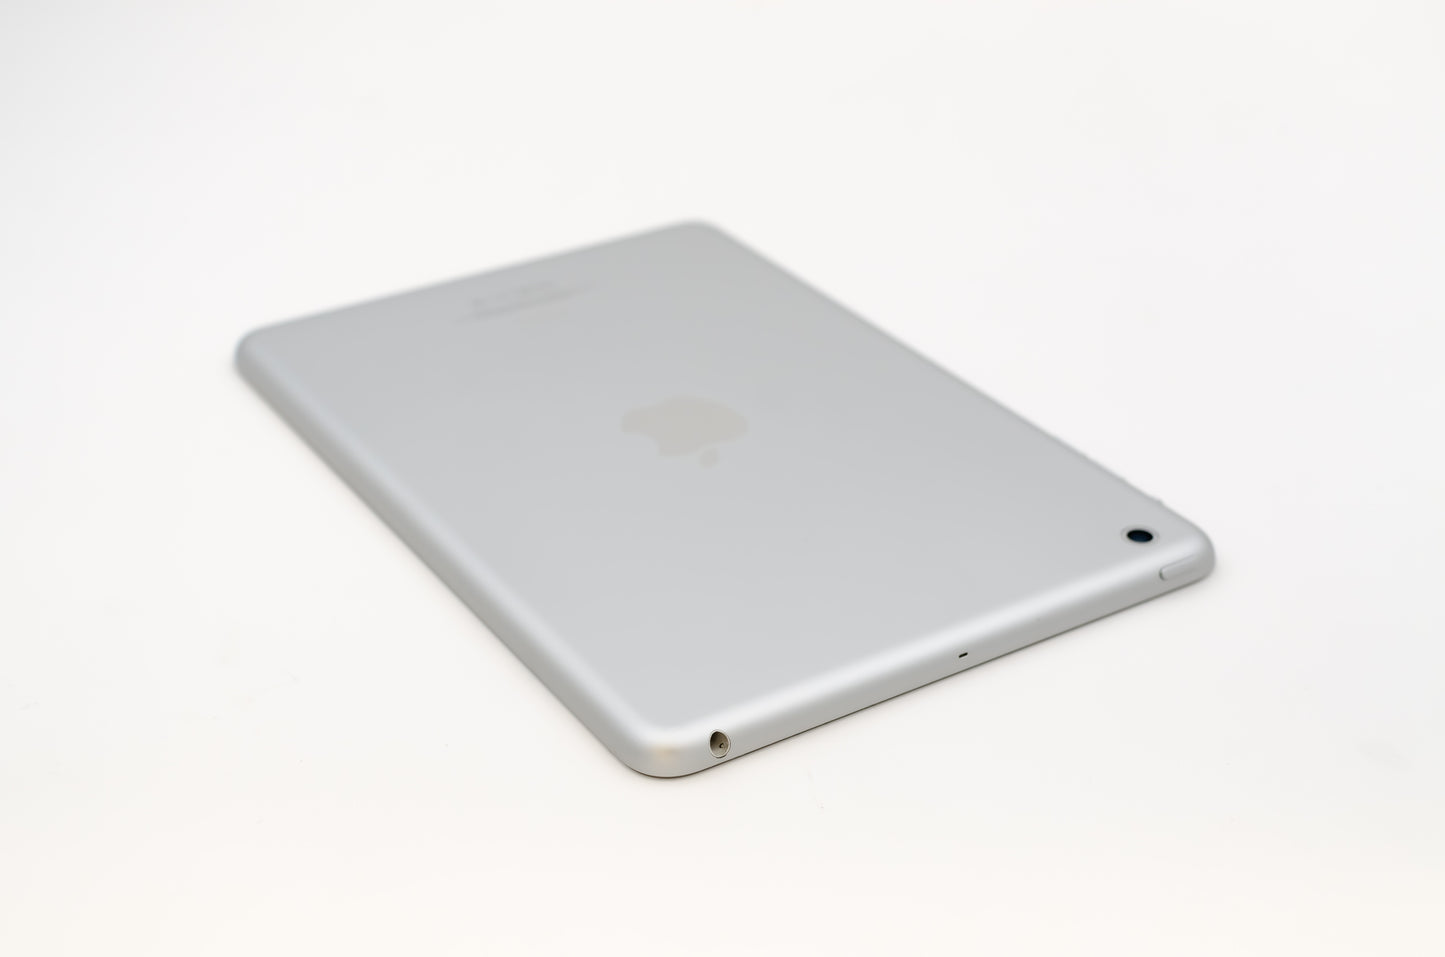 apple-2012-7.9-inch-ipad-mini-1-a1432-silver/white-3